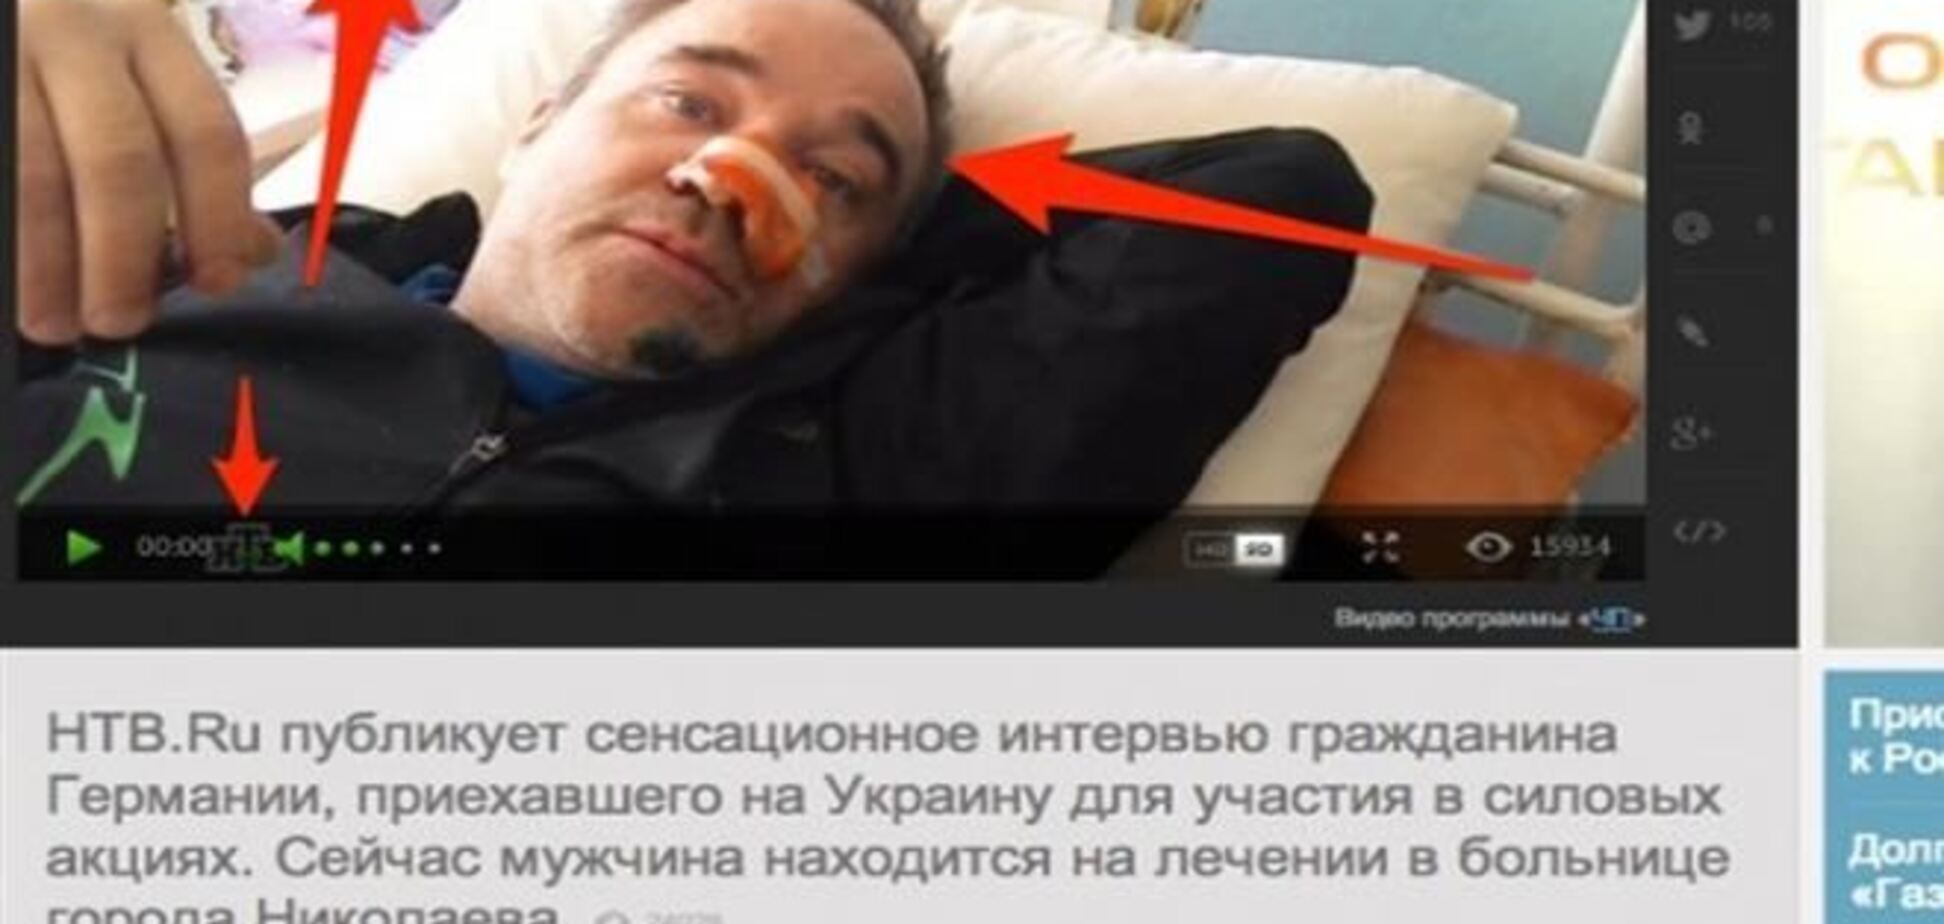 Новый 'ляп' российского ТВ: жертва радикалов и 'наемник - радикал'  в одном лице